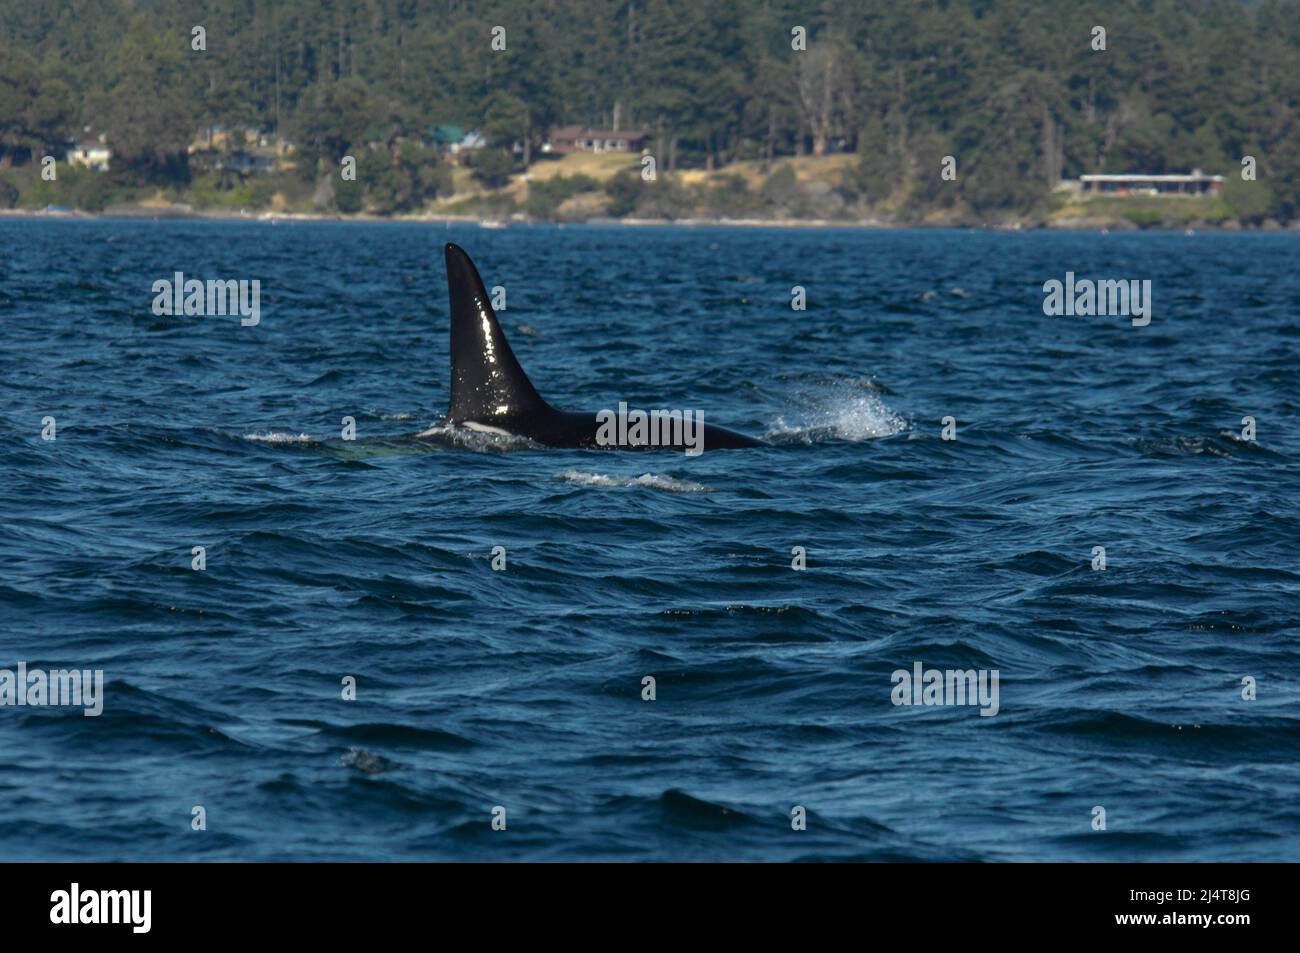 Orca near San Juan Island, Washington state Stock Photo